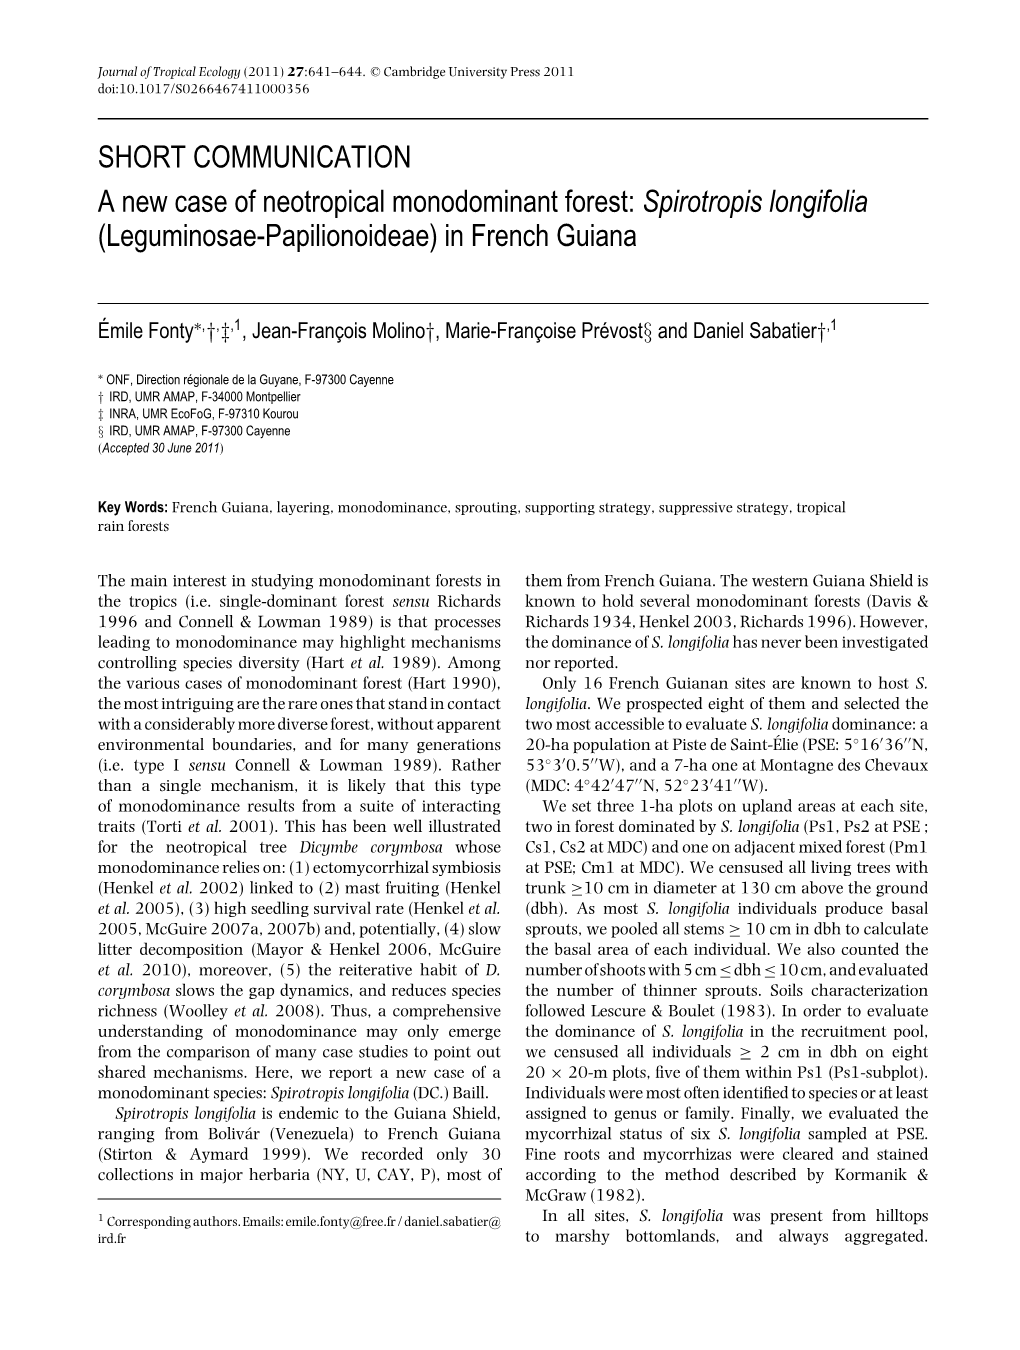 SHORT COMMUNICATION a New Case of Neotropical Monodominant Forest: Spirotropis Longifolia (Leguminosae-Papilionoideae) in French Guiana